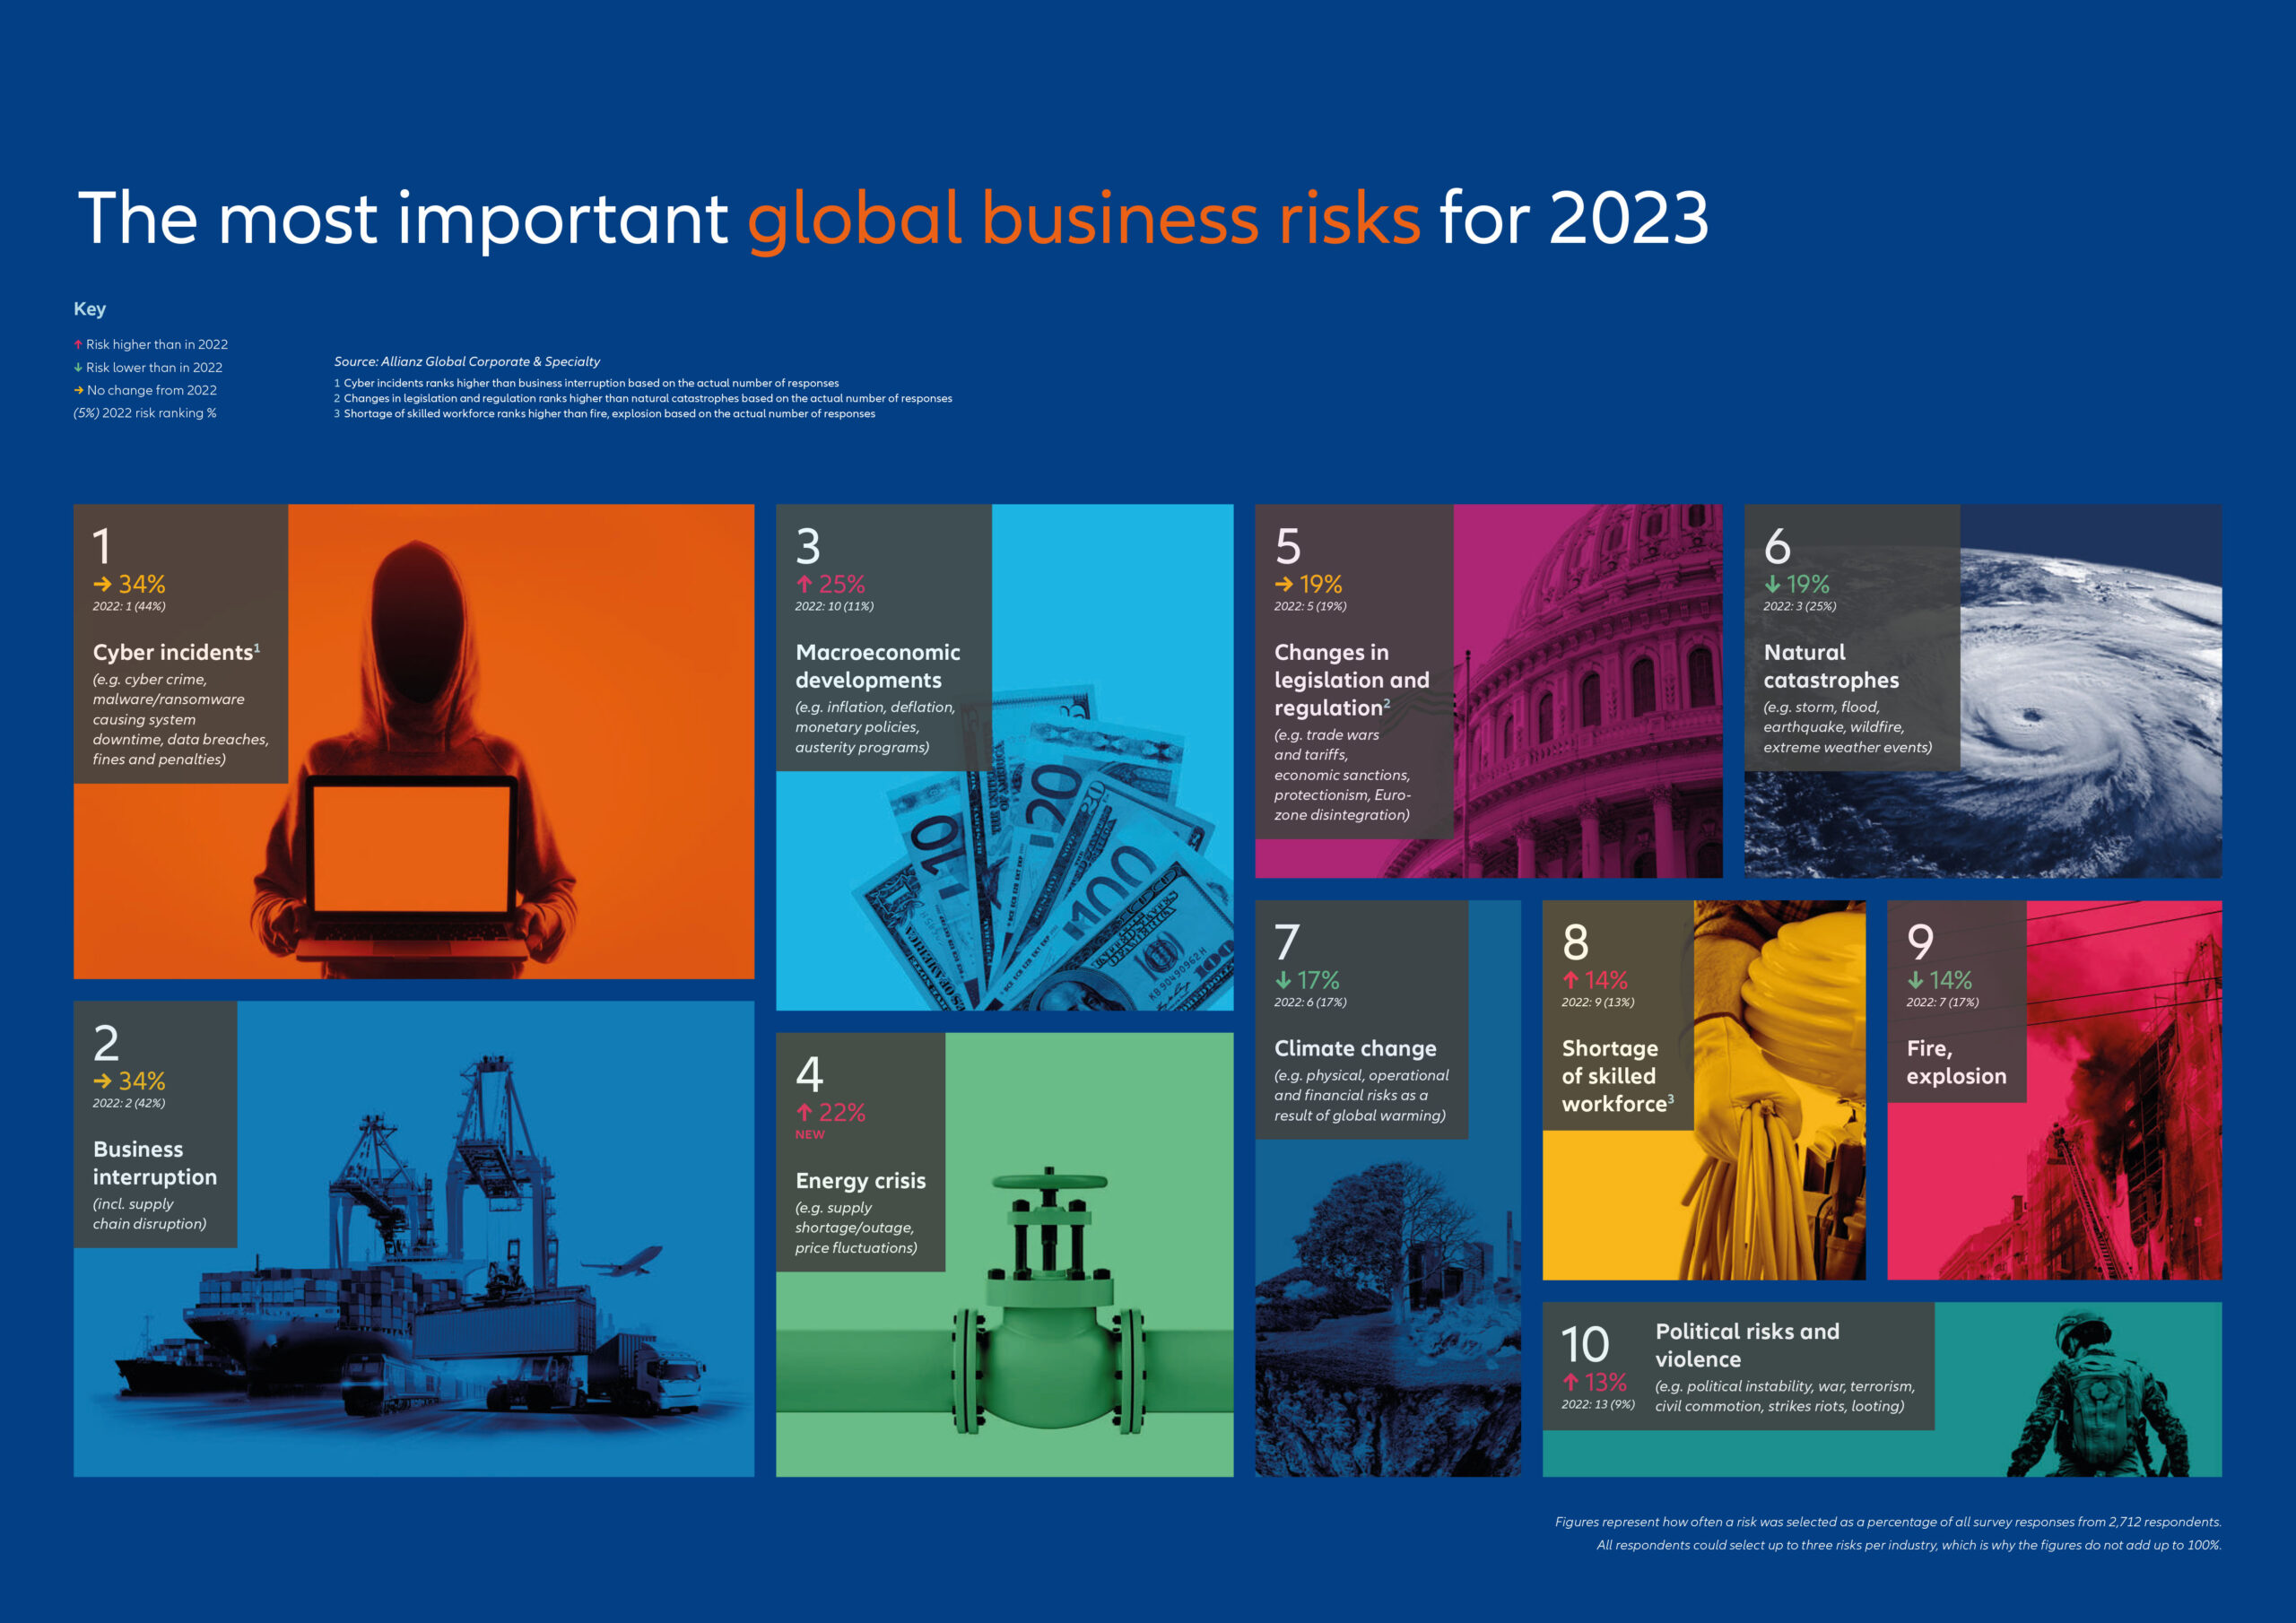 Βαρόμετρο Allianz: Kυβερνοκίνδυνοι και διακοπή εργασιών οι κορυφαίοι κίνδυνοι για τις επιχειρήσεις το 2023